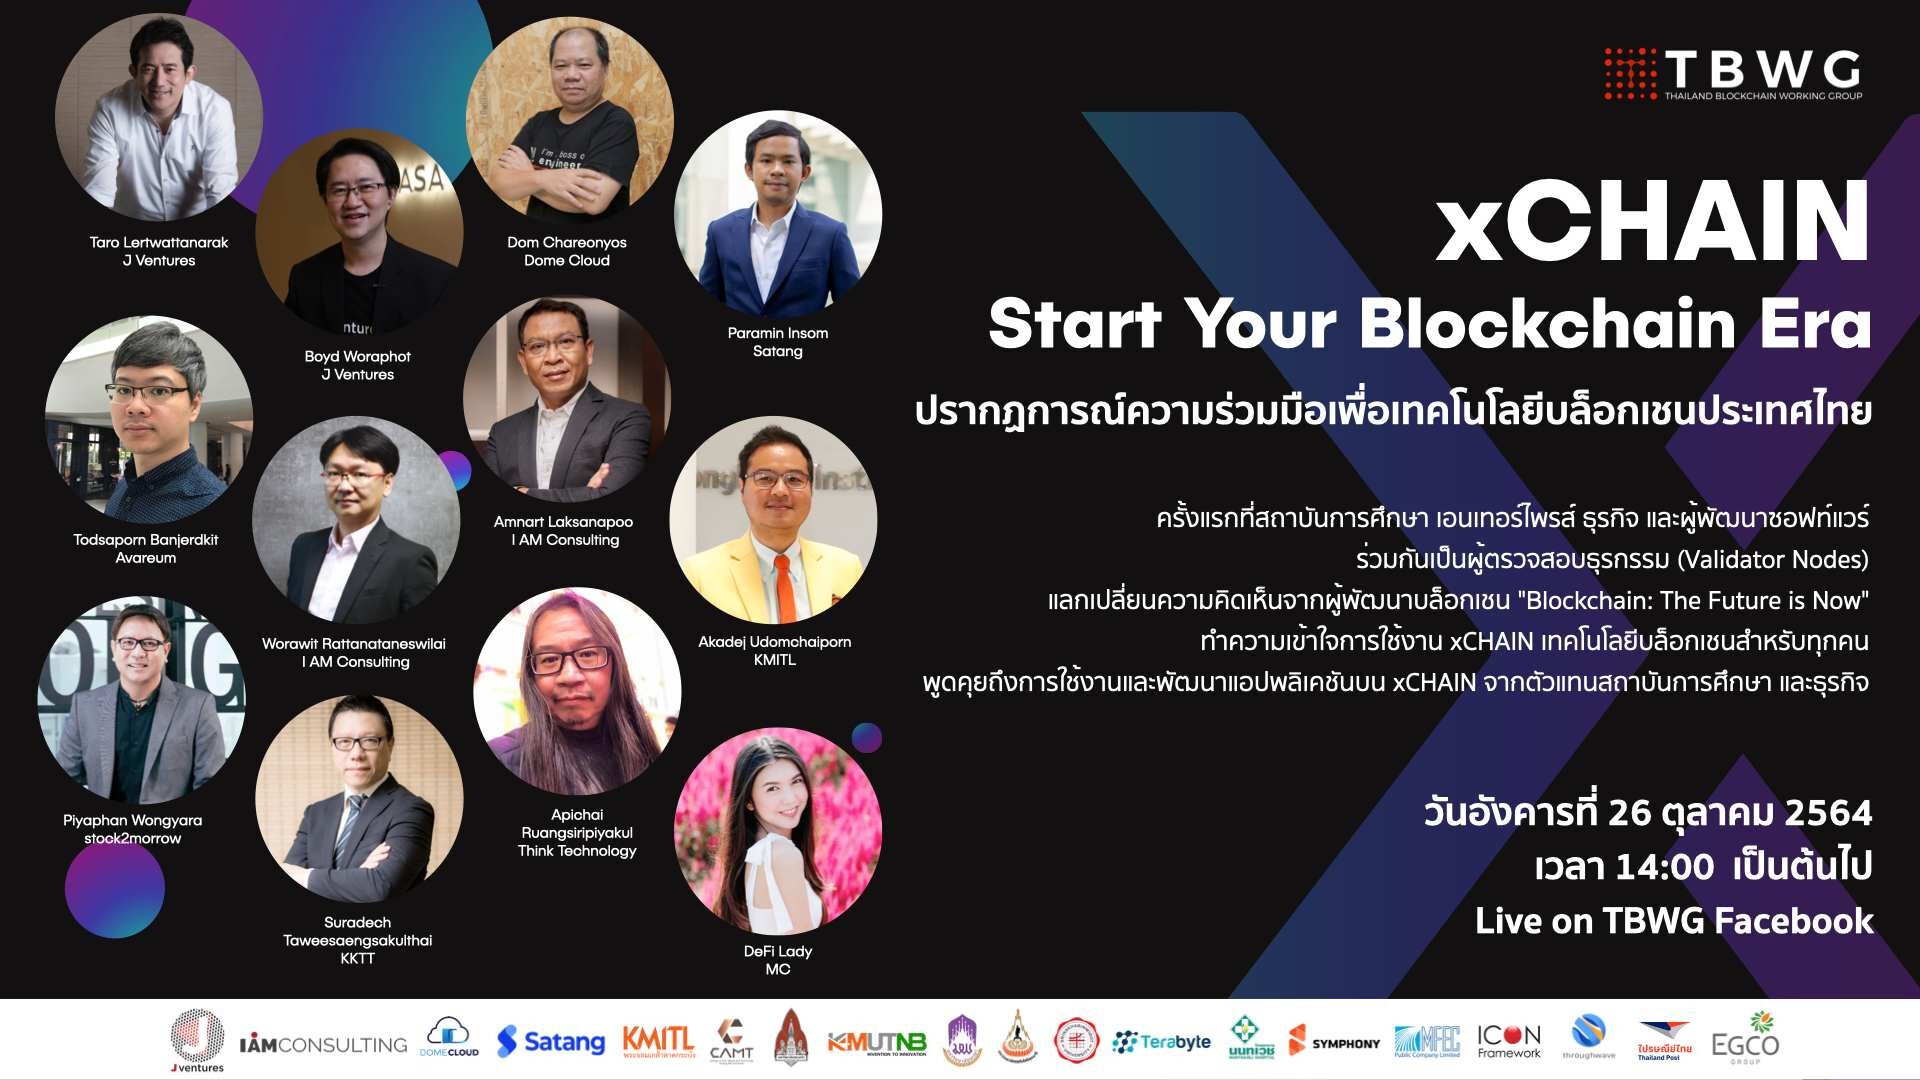 ร่วมชมไลฟ์เปิดตัว xCHAIN ระบบบล็อกเชนพร้อมใช้งานจริงสำหรับธุรกิจและนักพัฒนา จาก Thailand Blockchain Working Group (TBWG) และพันธมิตร